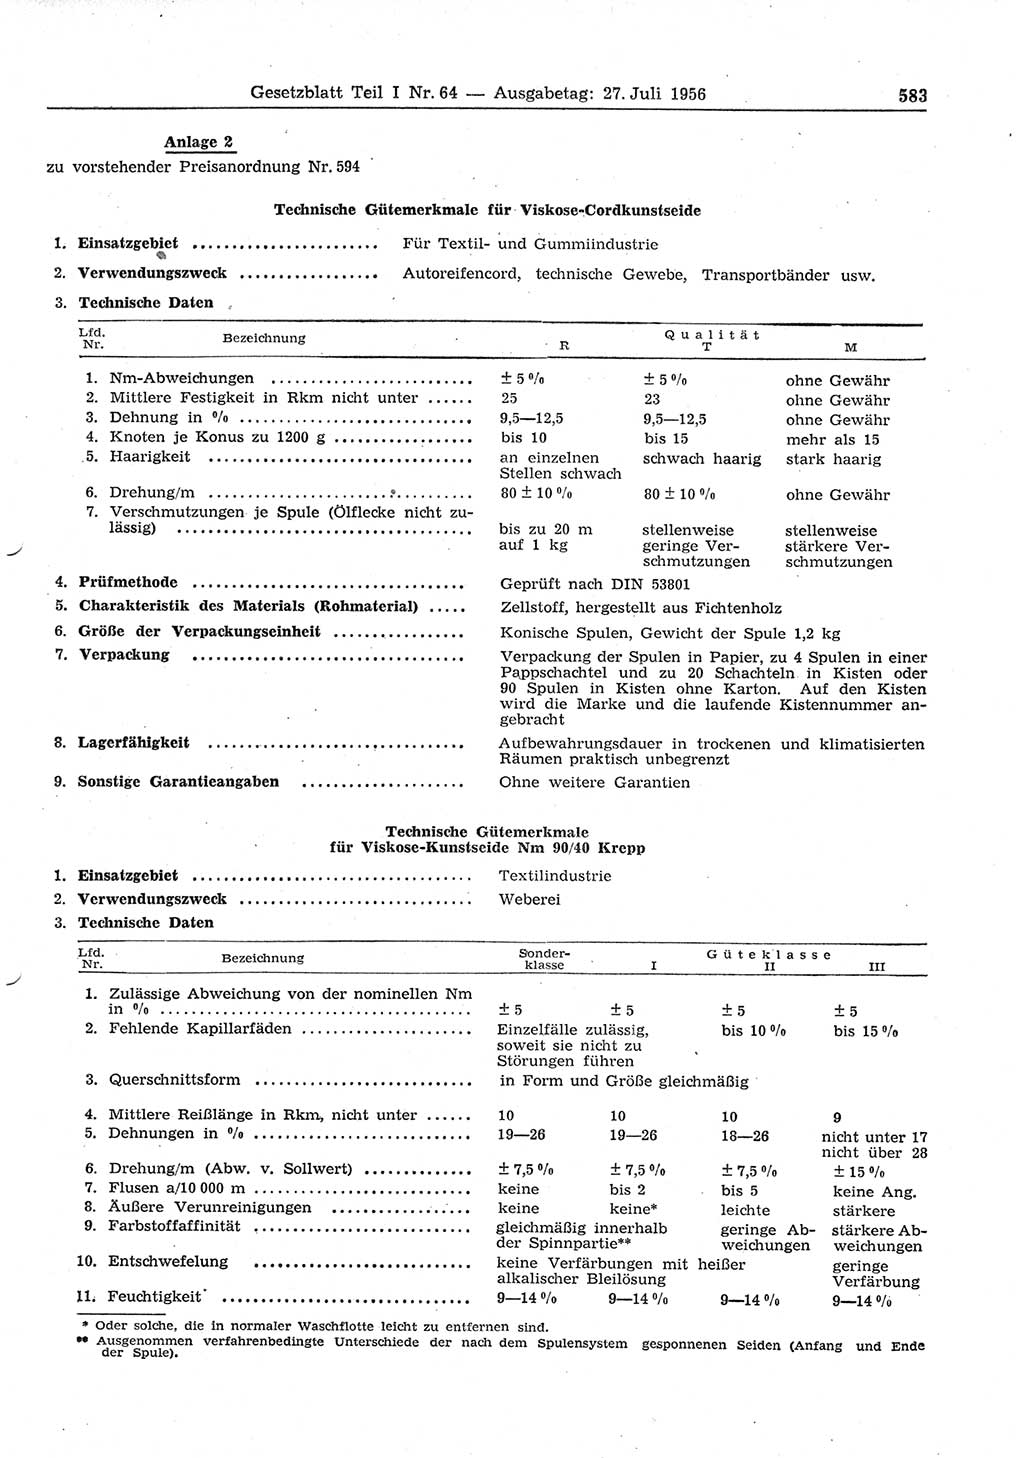 Gesetzblatt (GBl.) der Deutschen Demokratischen Republik (DDR) Teil Ⅰ 1956, Seite 583 (GBl. DDR Ⅰ 1956, S. 583)